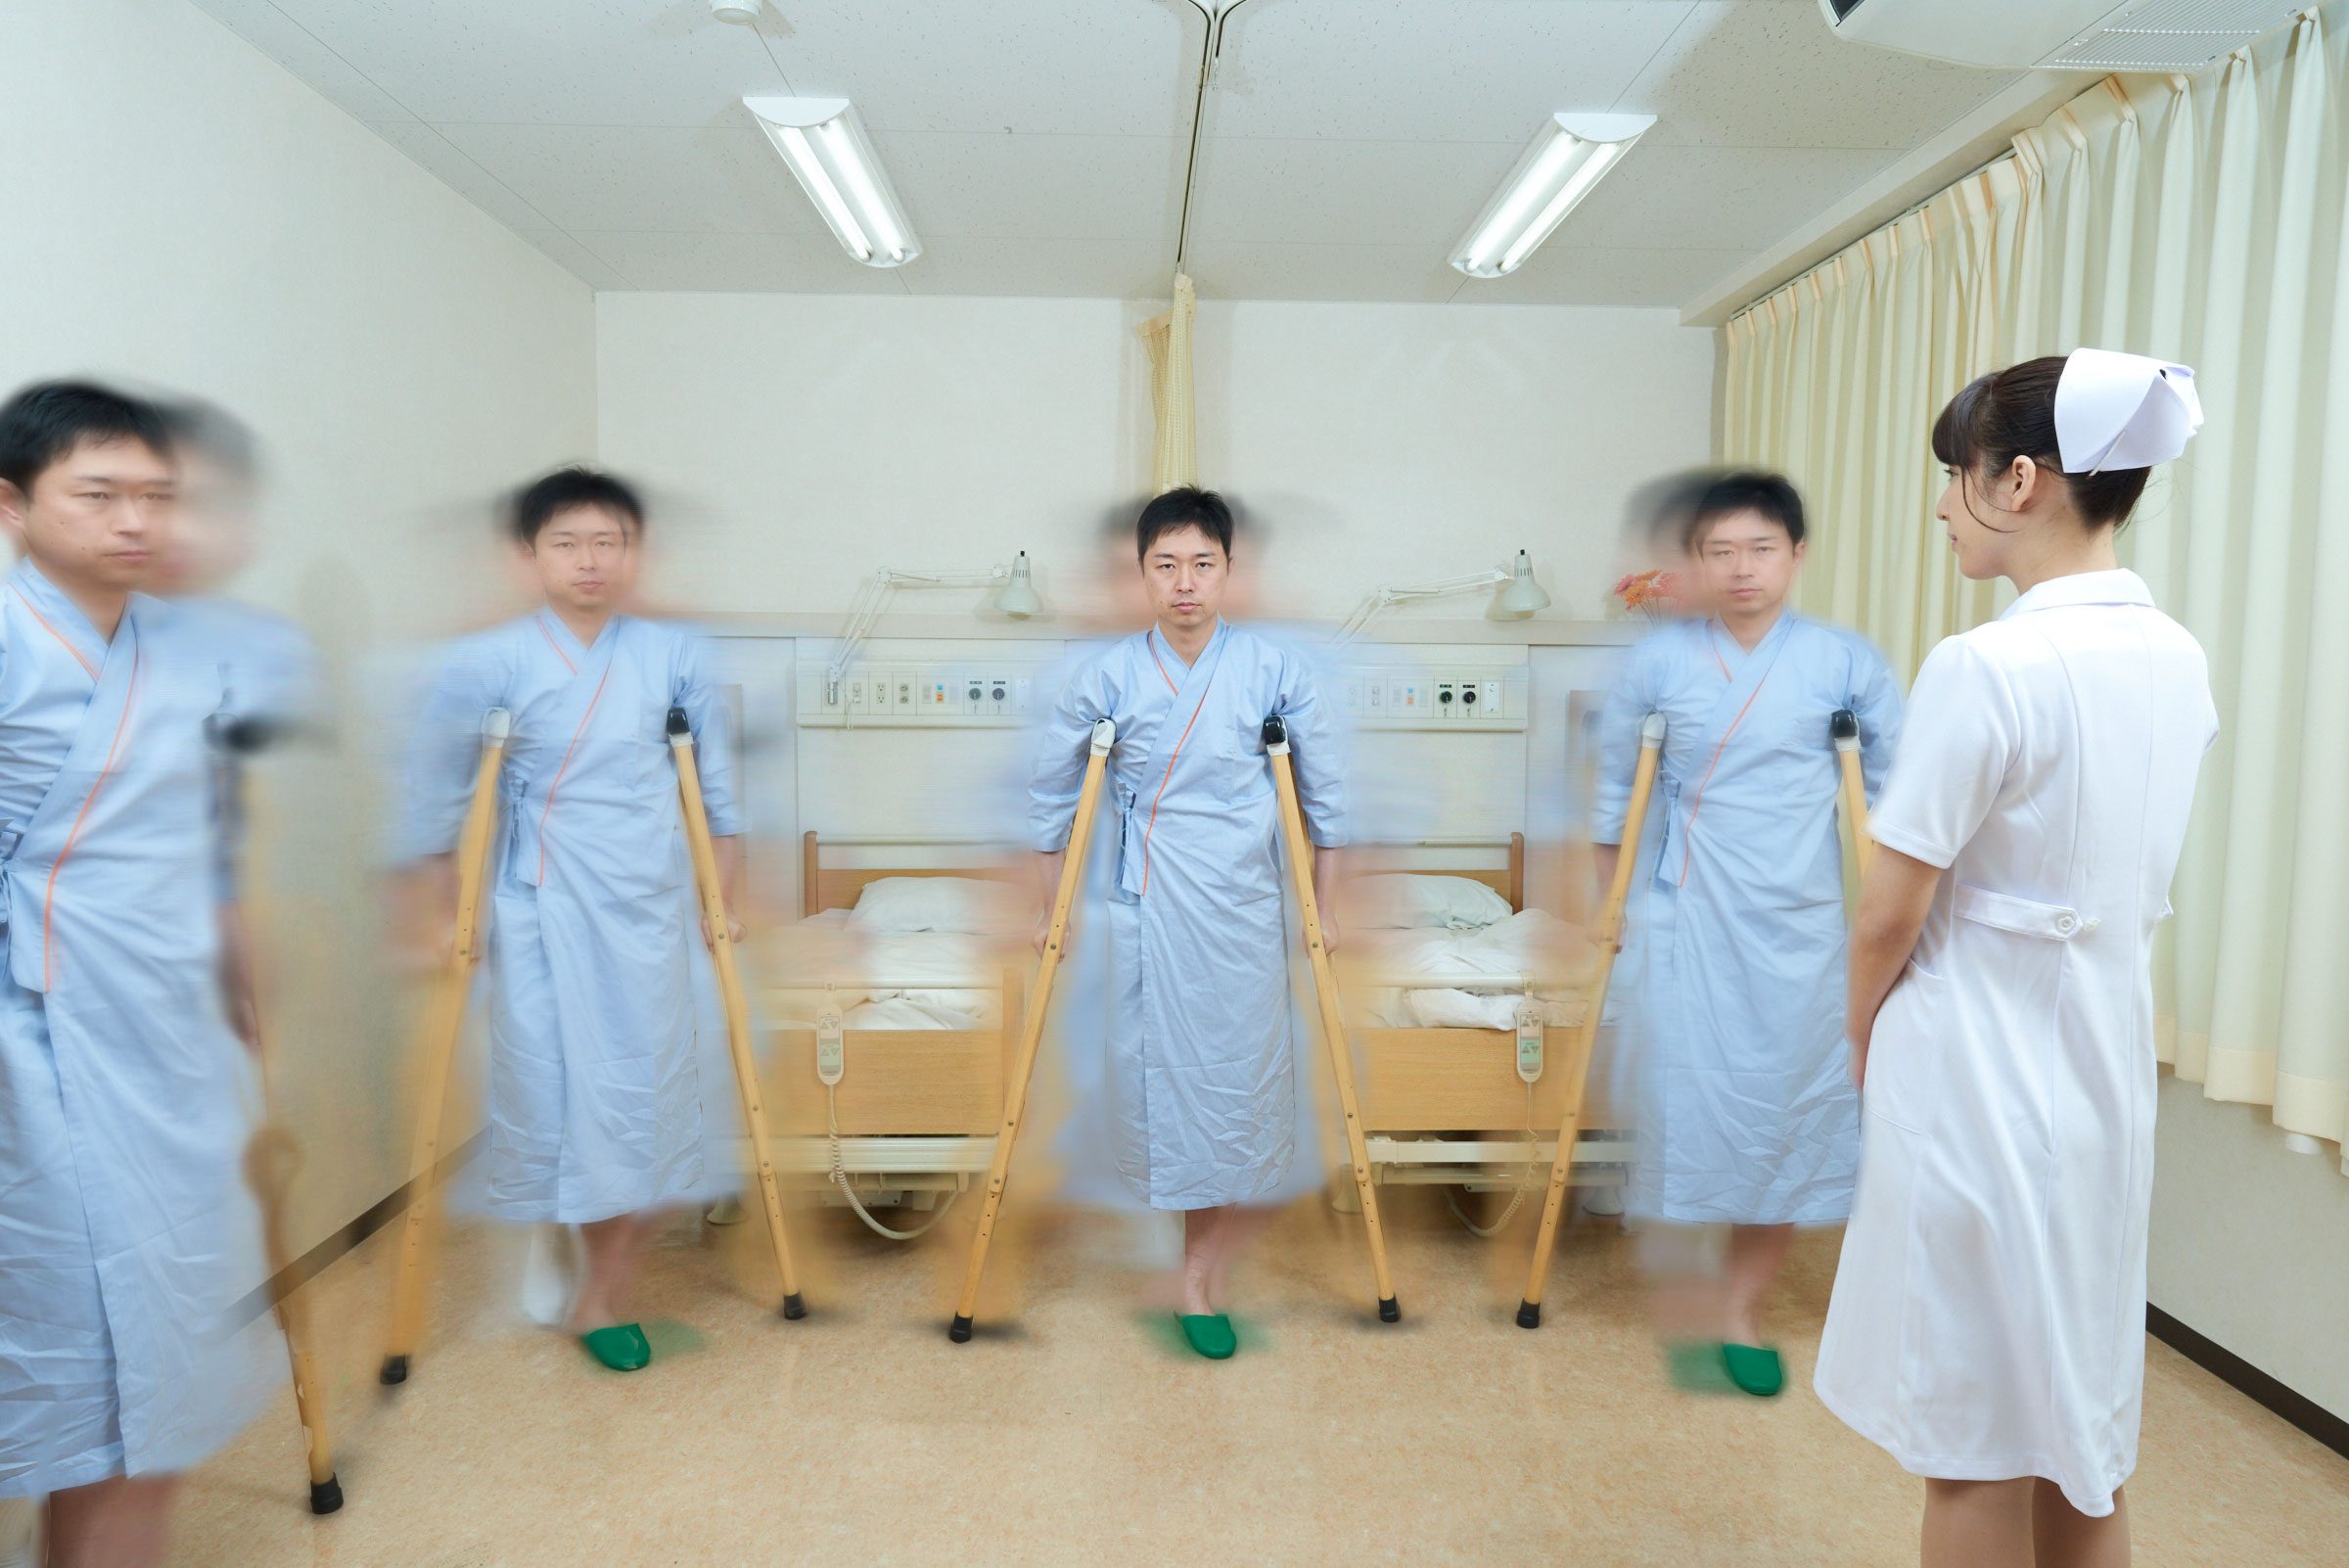 分身の術を使う患者に翻弄される看護師 看護師フリー写真素材サイト スキマナース